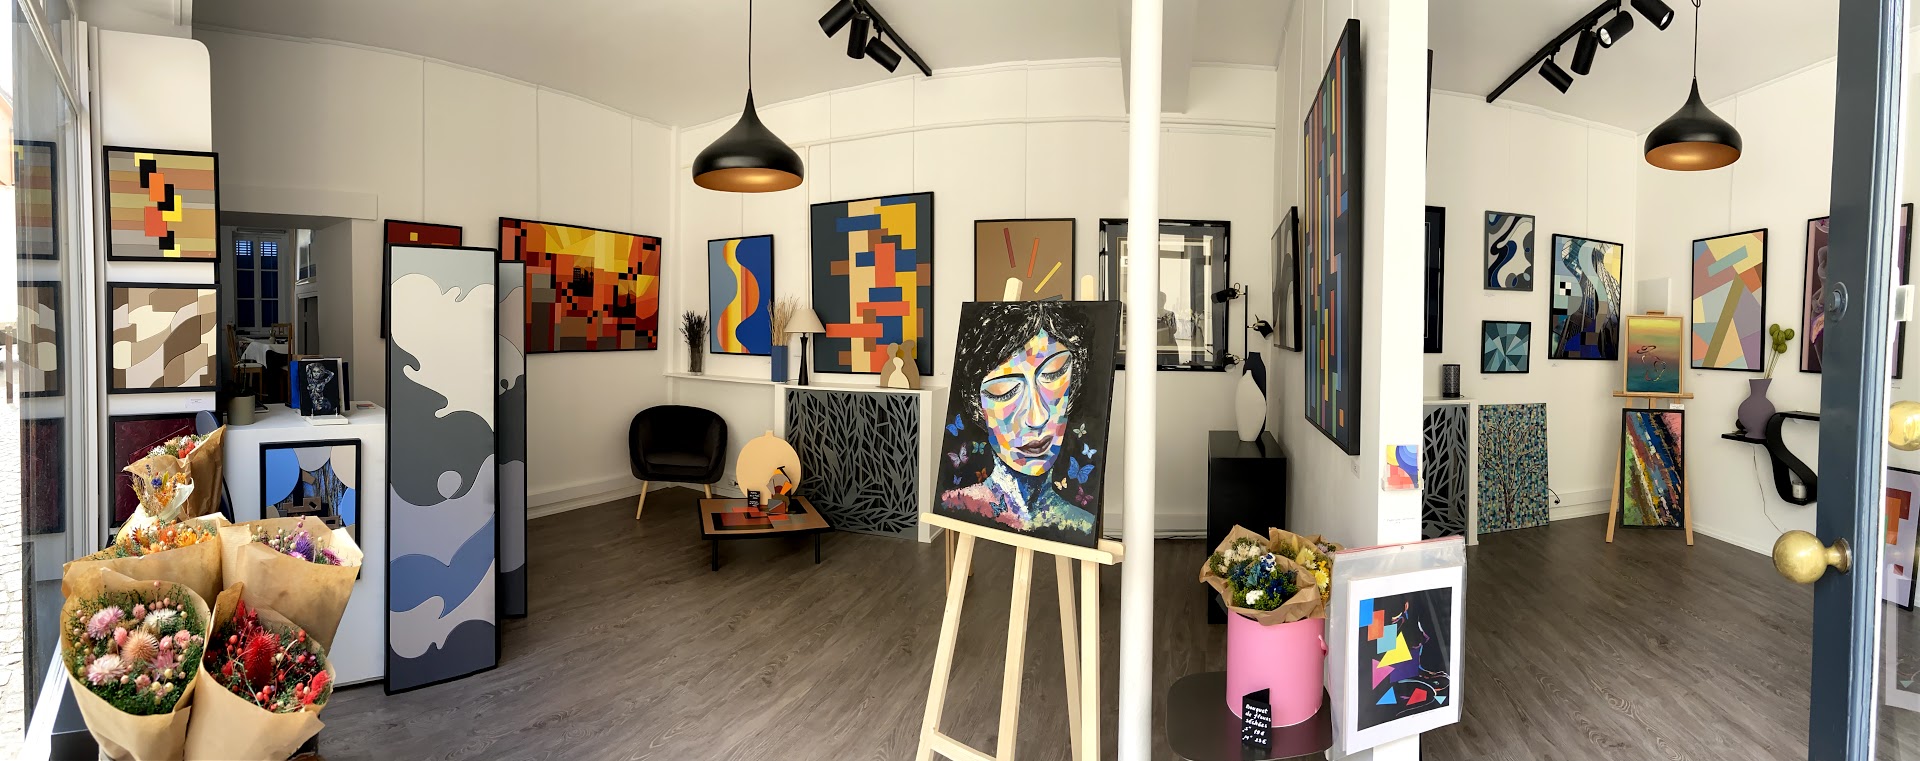 Gallery - Workshop